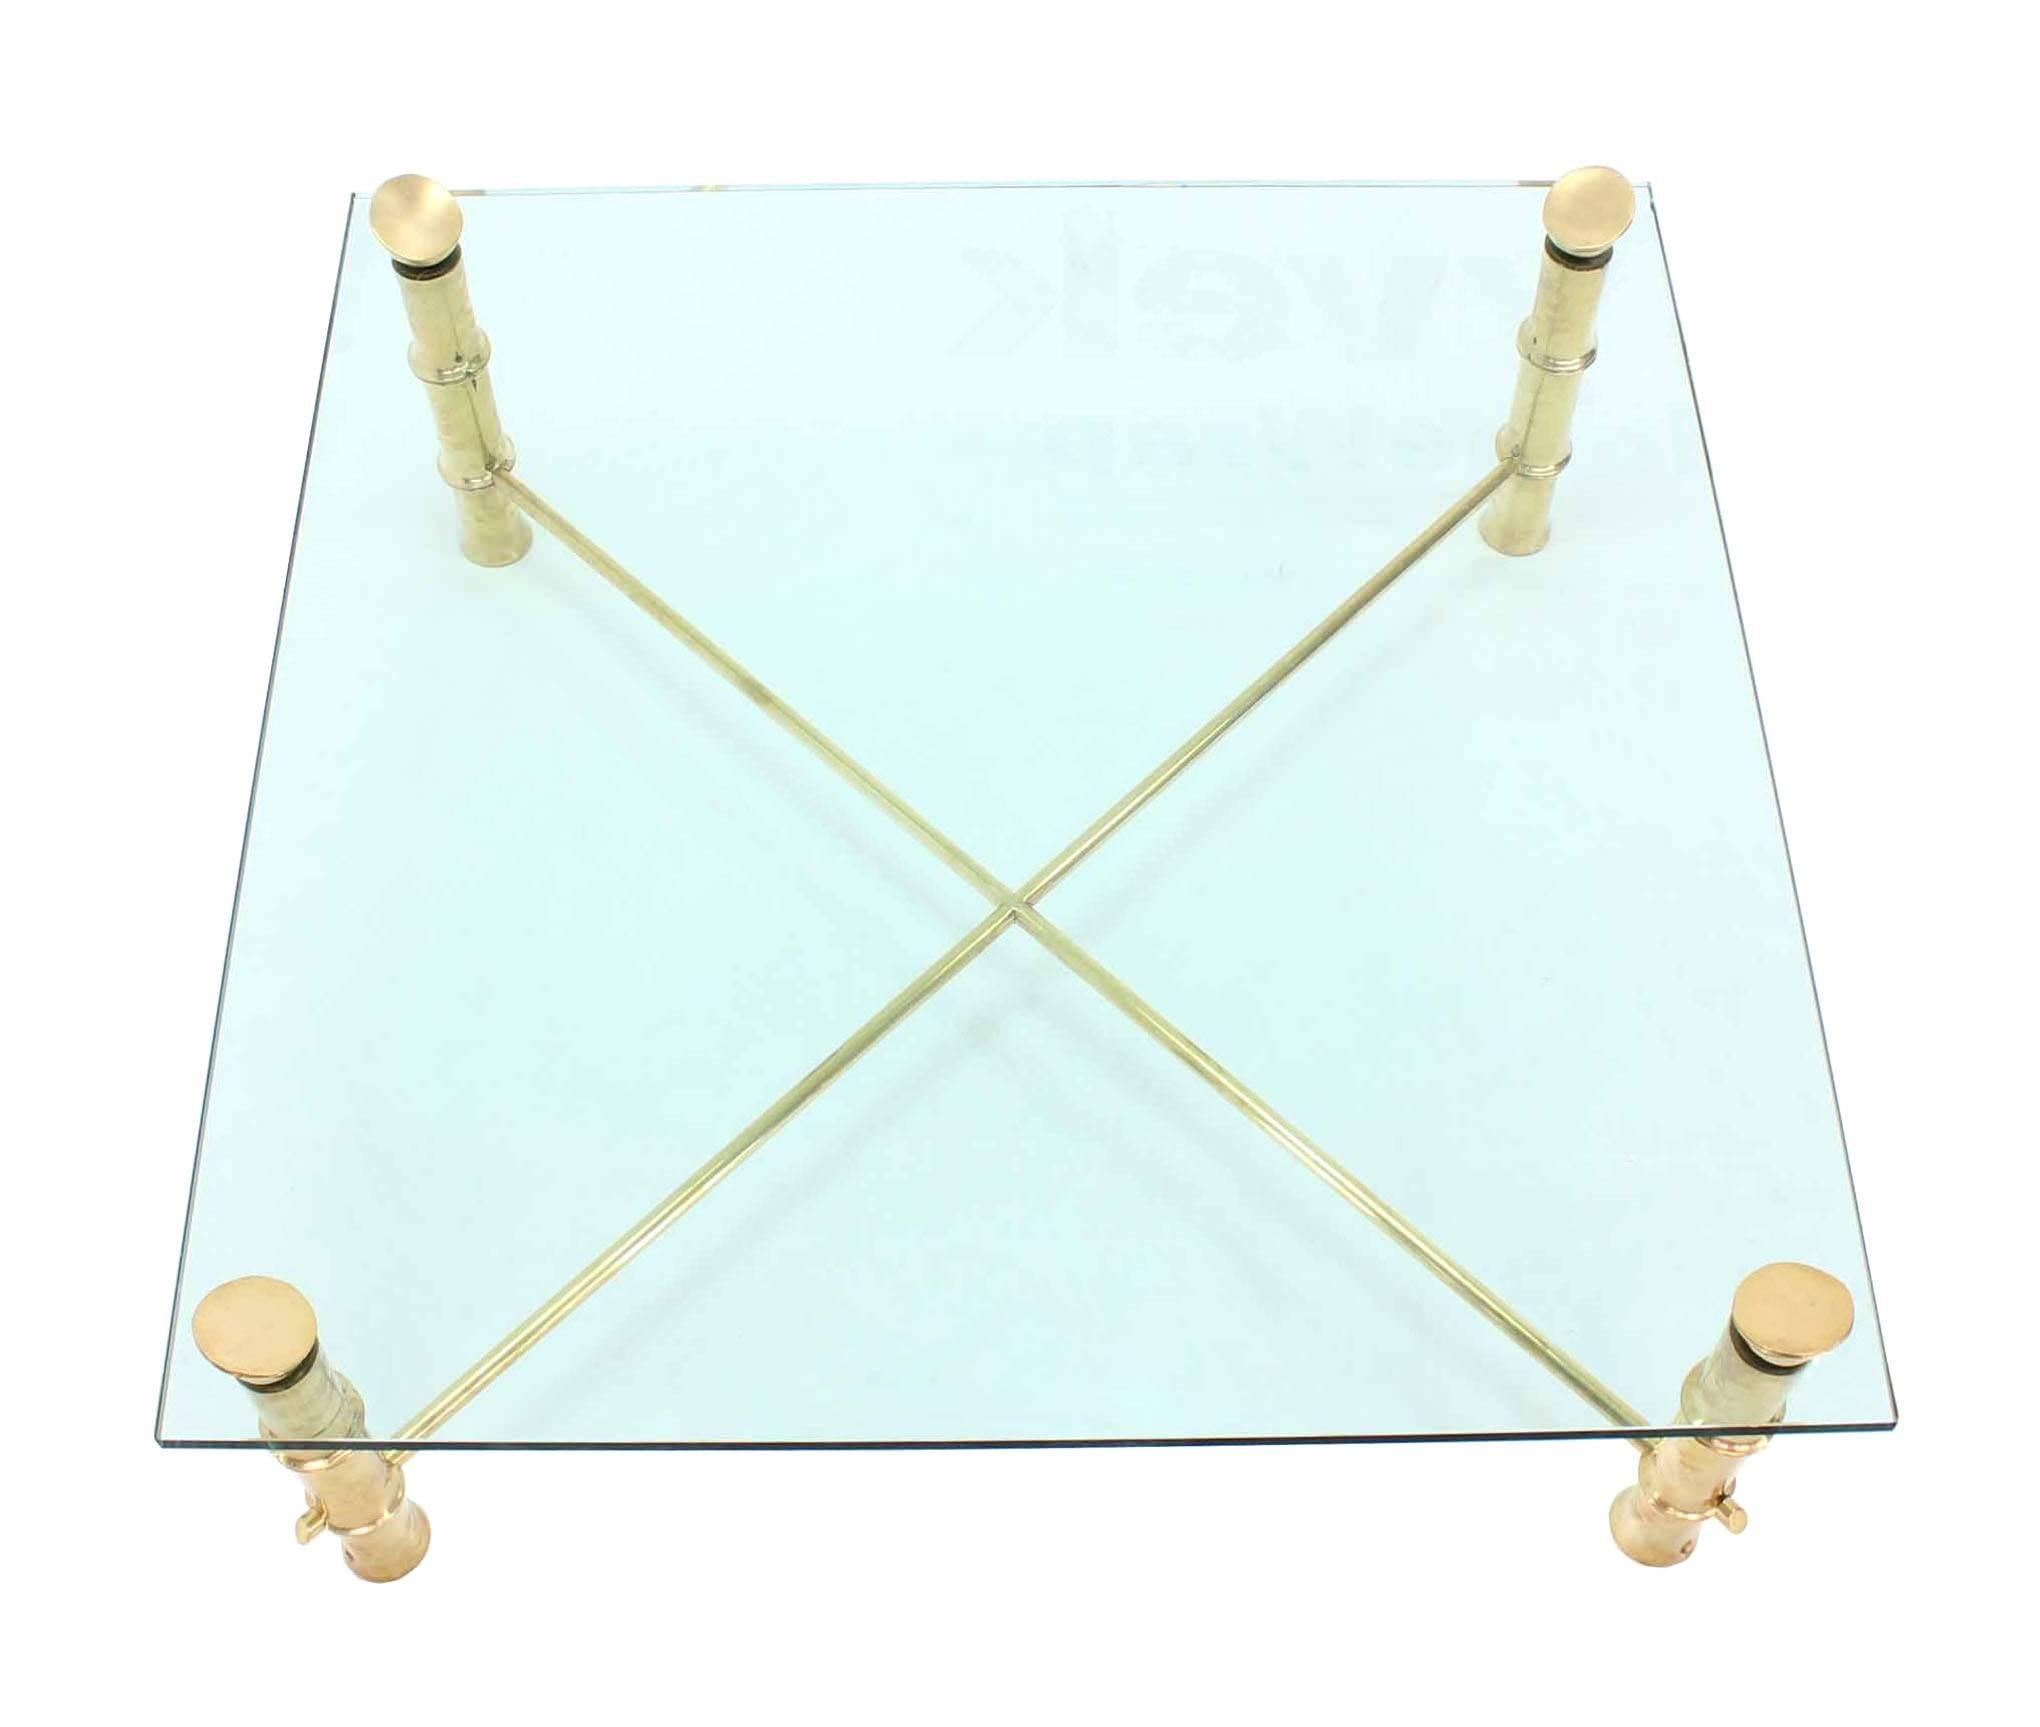 Très belle table basse carrée en laiton poli ou en bronze, avec des pieds en bronze. Mesures : 45 x 45.







Dans le style de la Maison Bagues